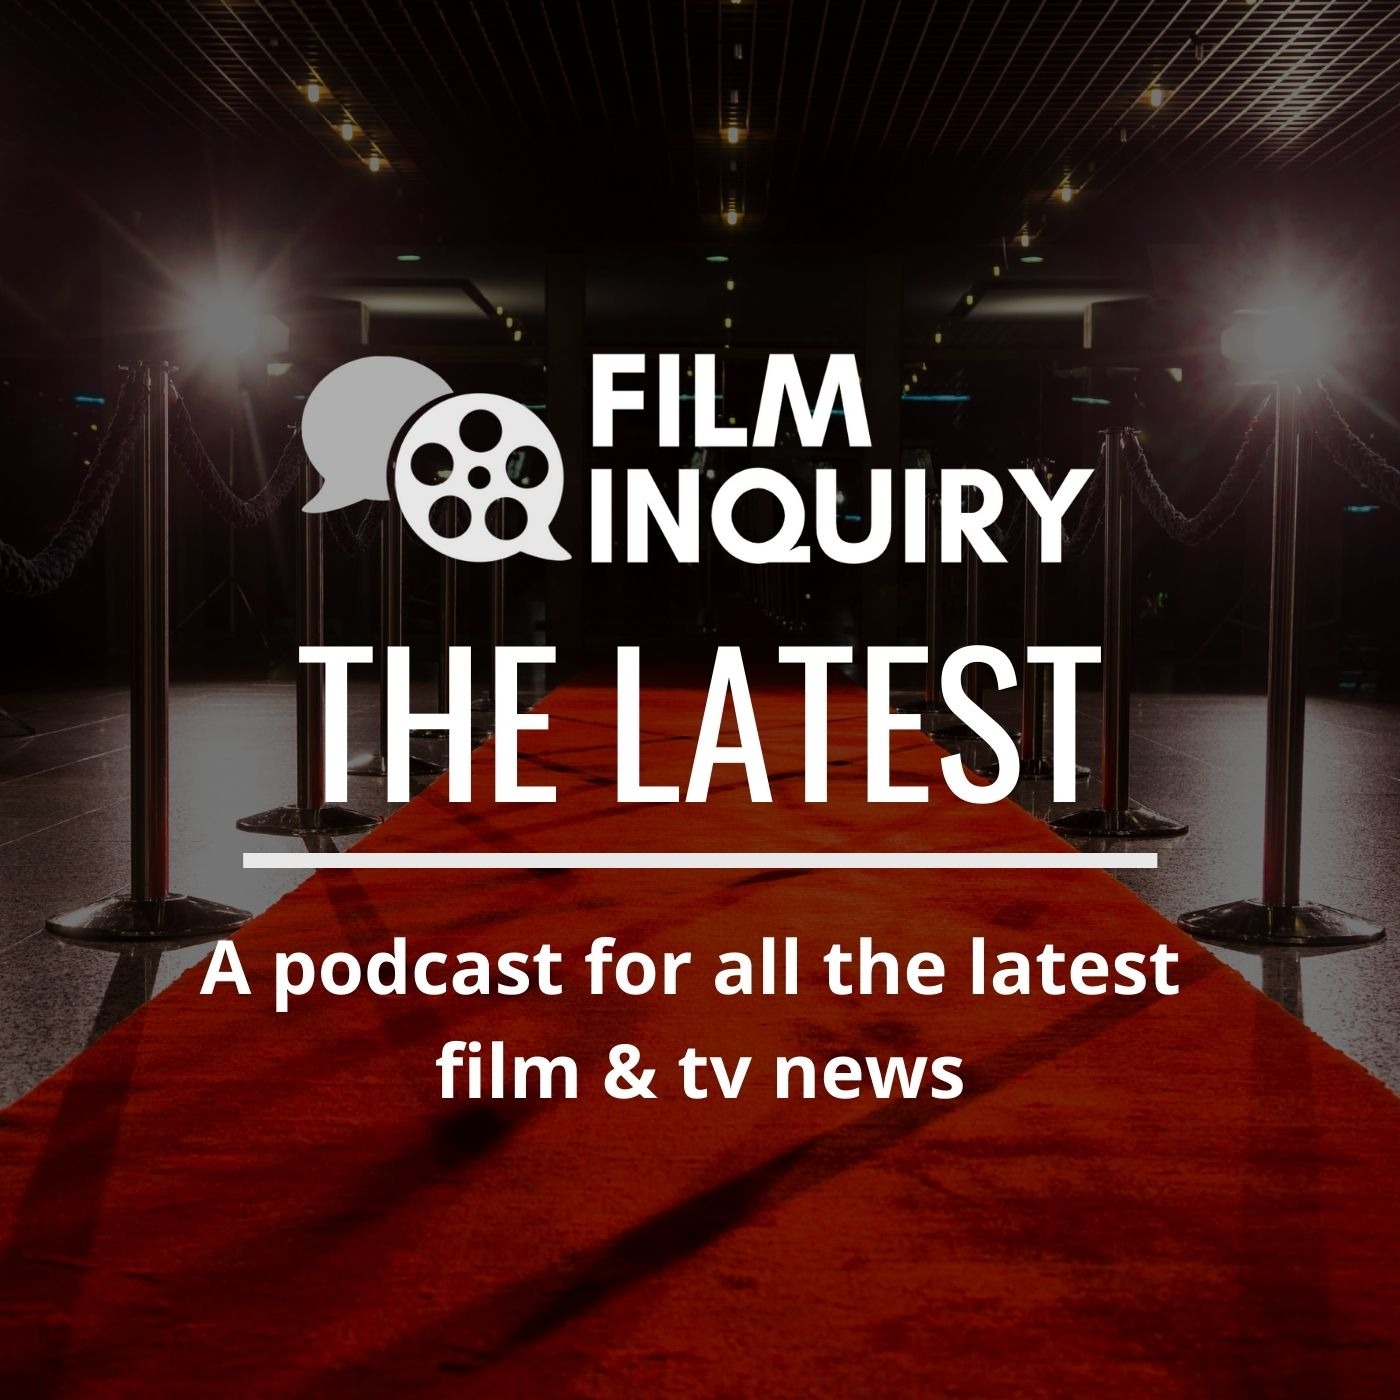 Film Inquiry's The Latest